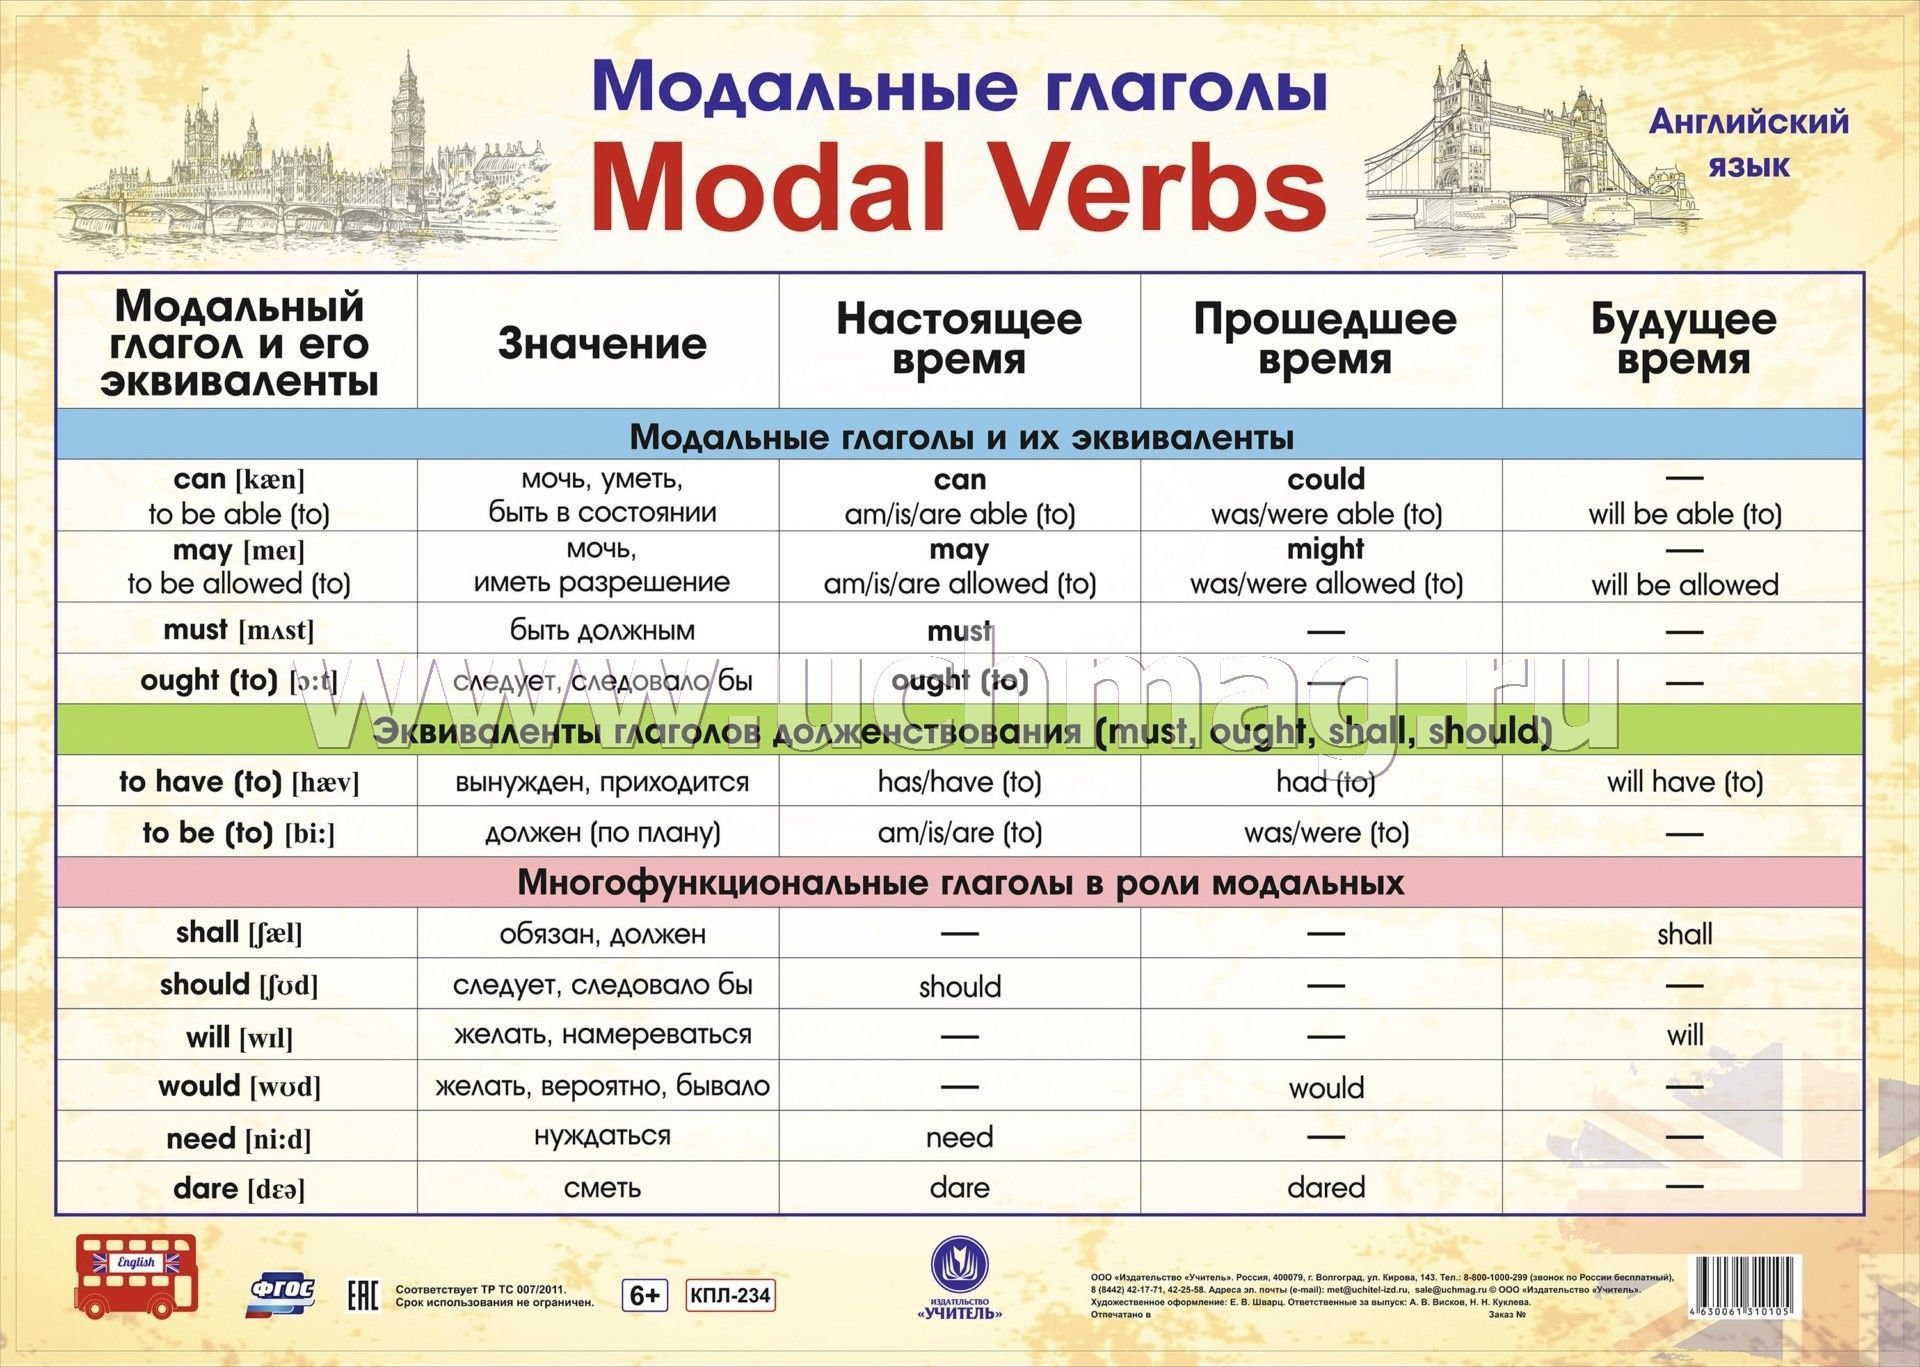 Все модальные глаголы в английском языке. Модальные глаголы в английском языке таблица. Модальные глаголы англ яз таблица. Модальные гляголы в анг. Можальные гдаголы втанглийсуом языке.